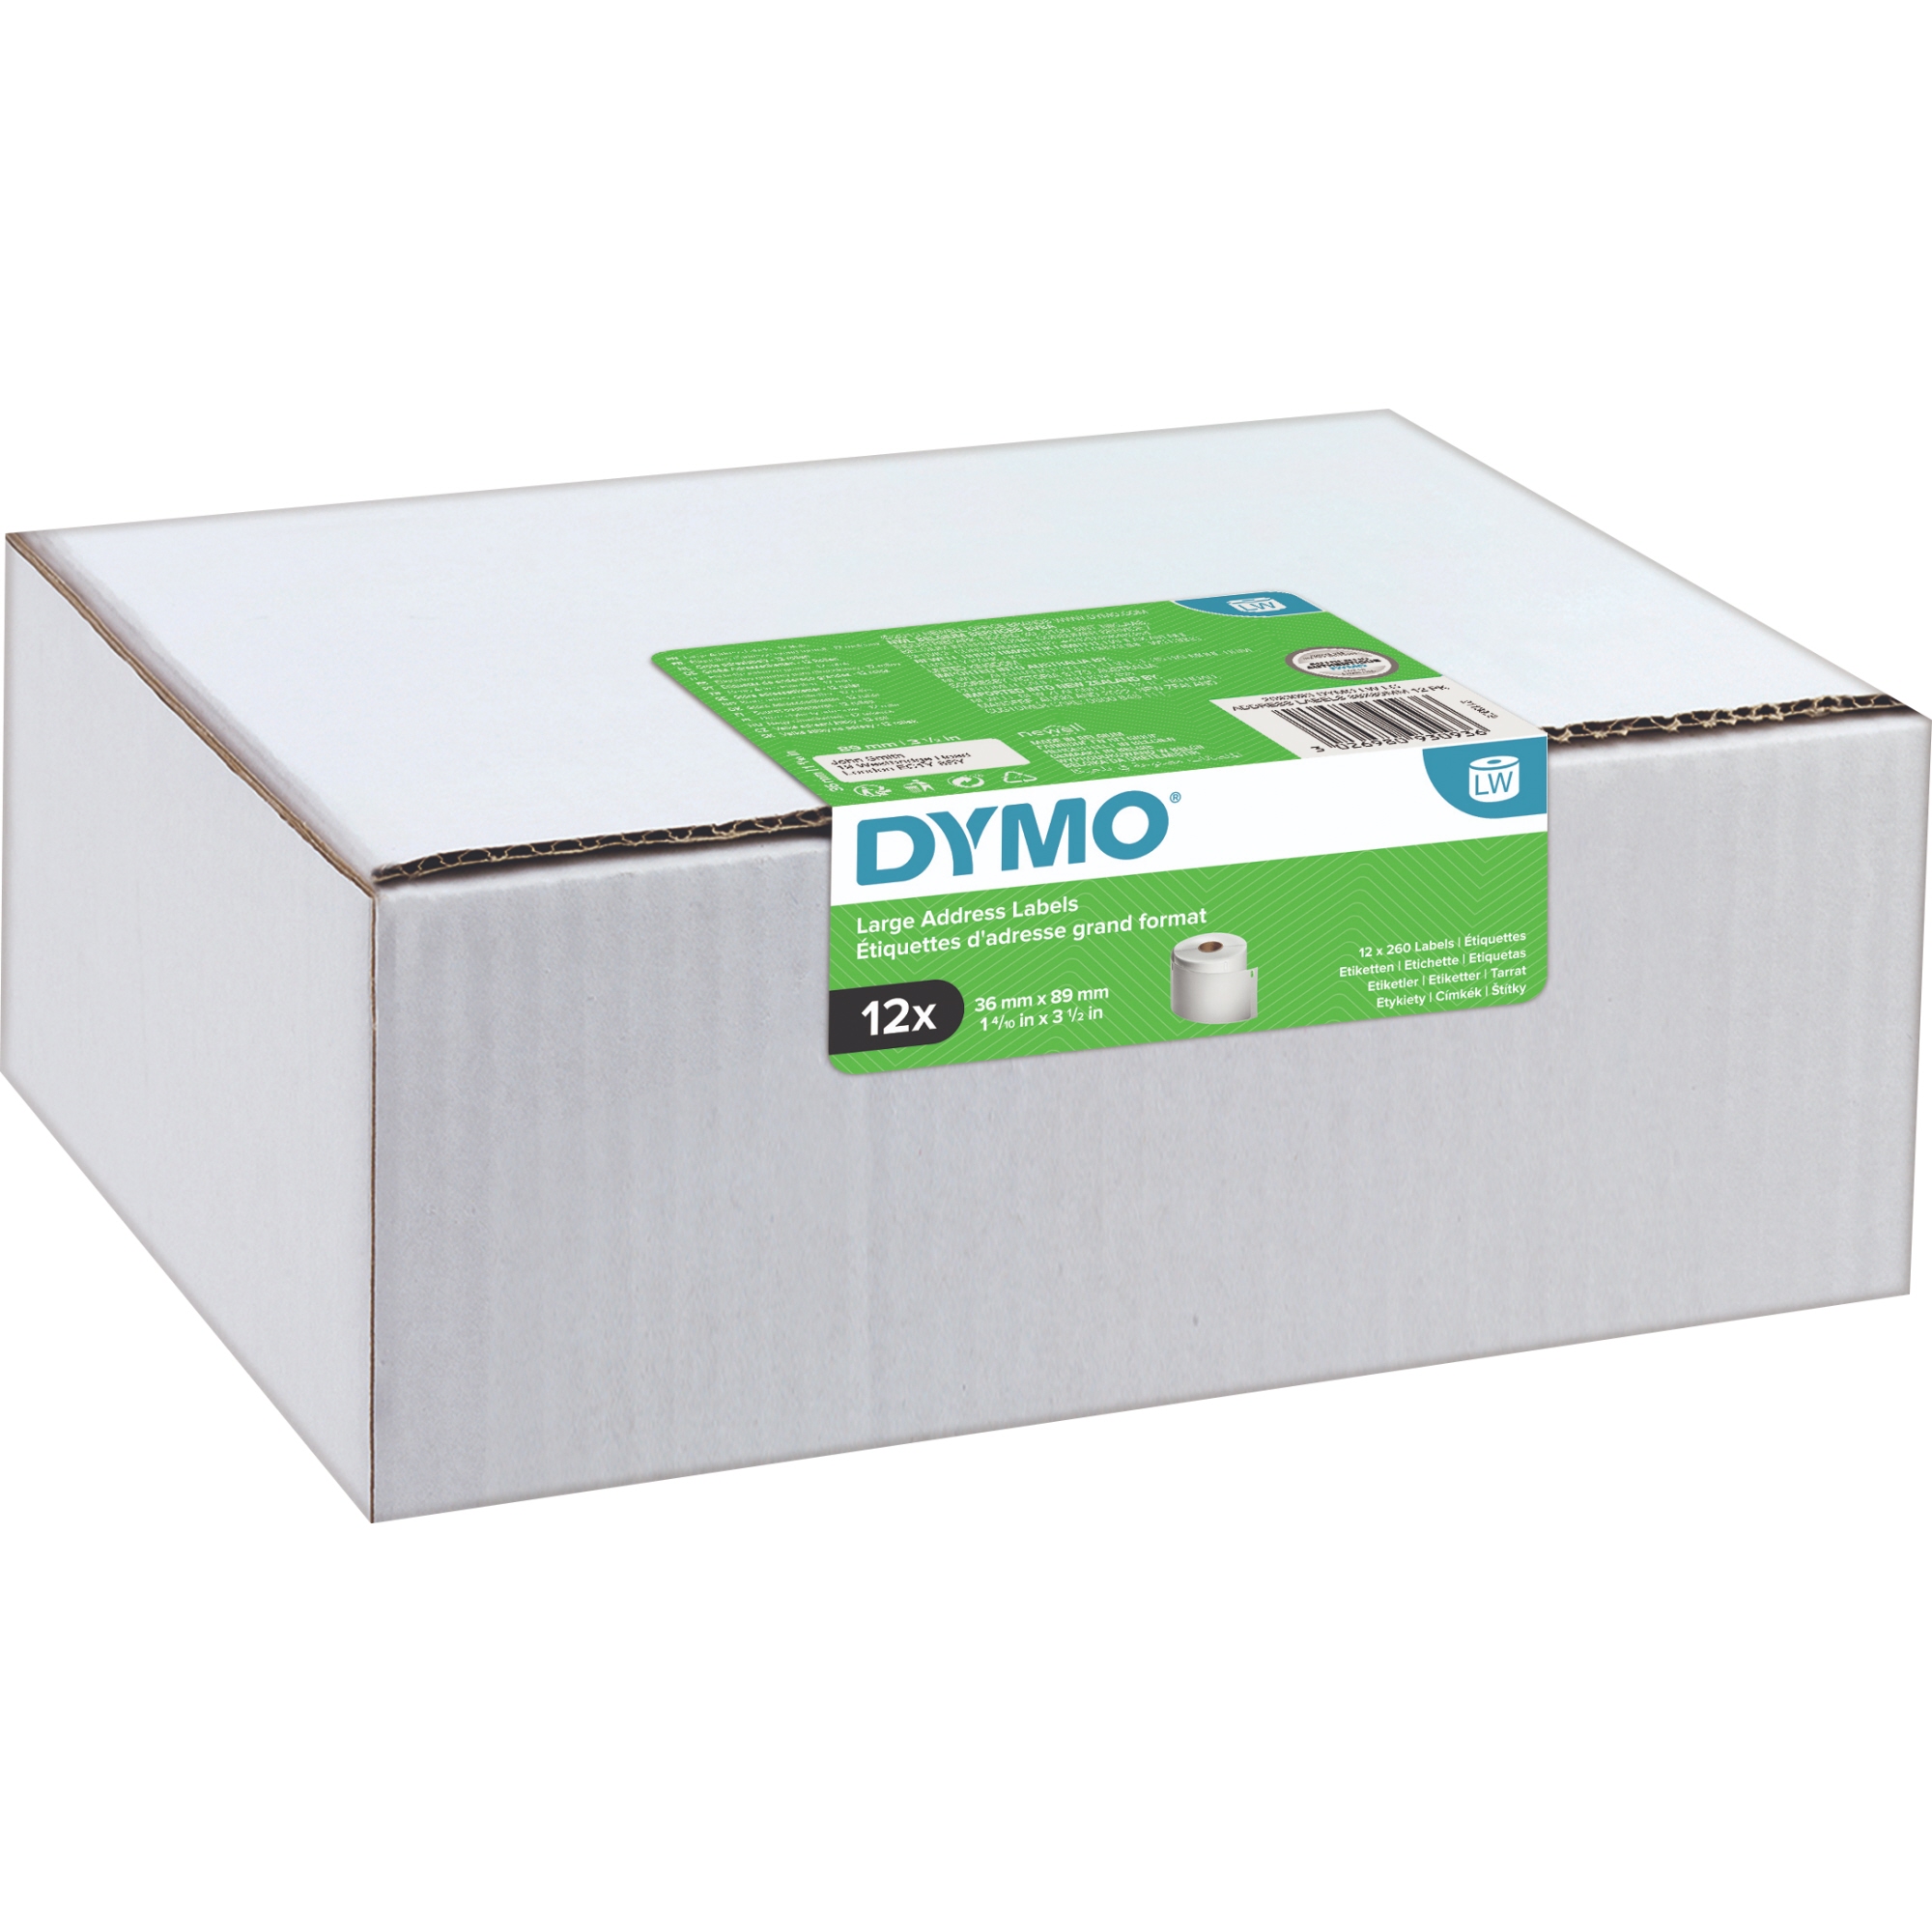 DYMO® Etikett LW 36x89mm weiß 260Etiketten 12er Pack